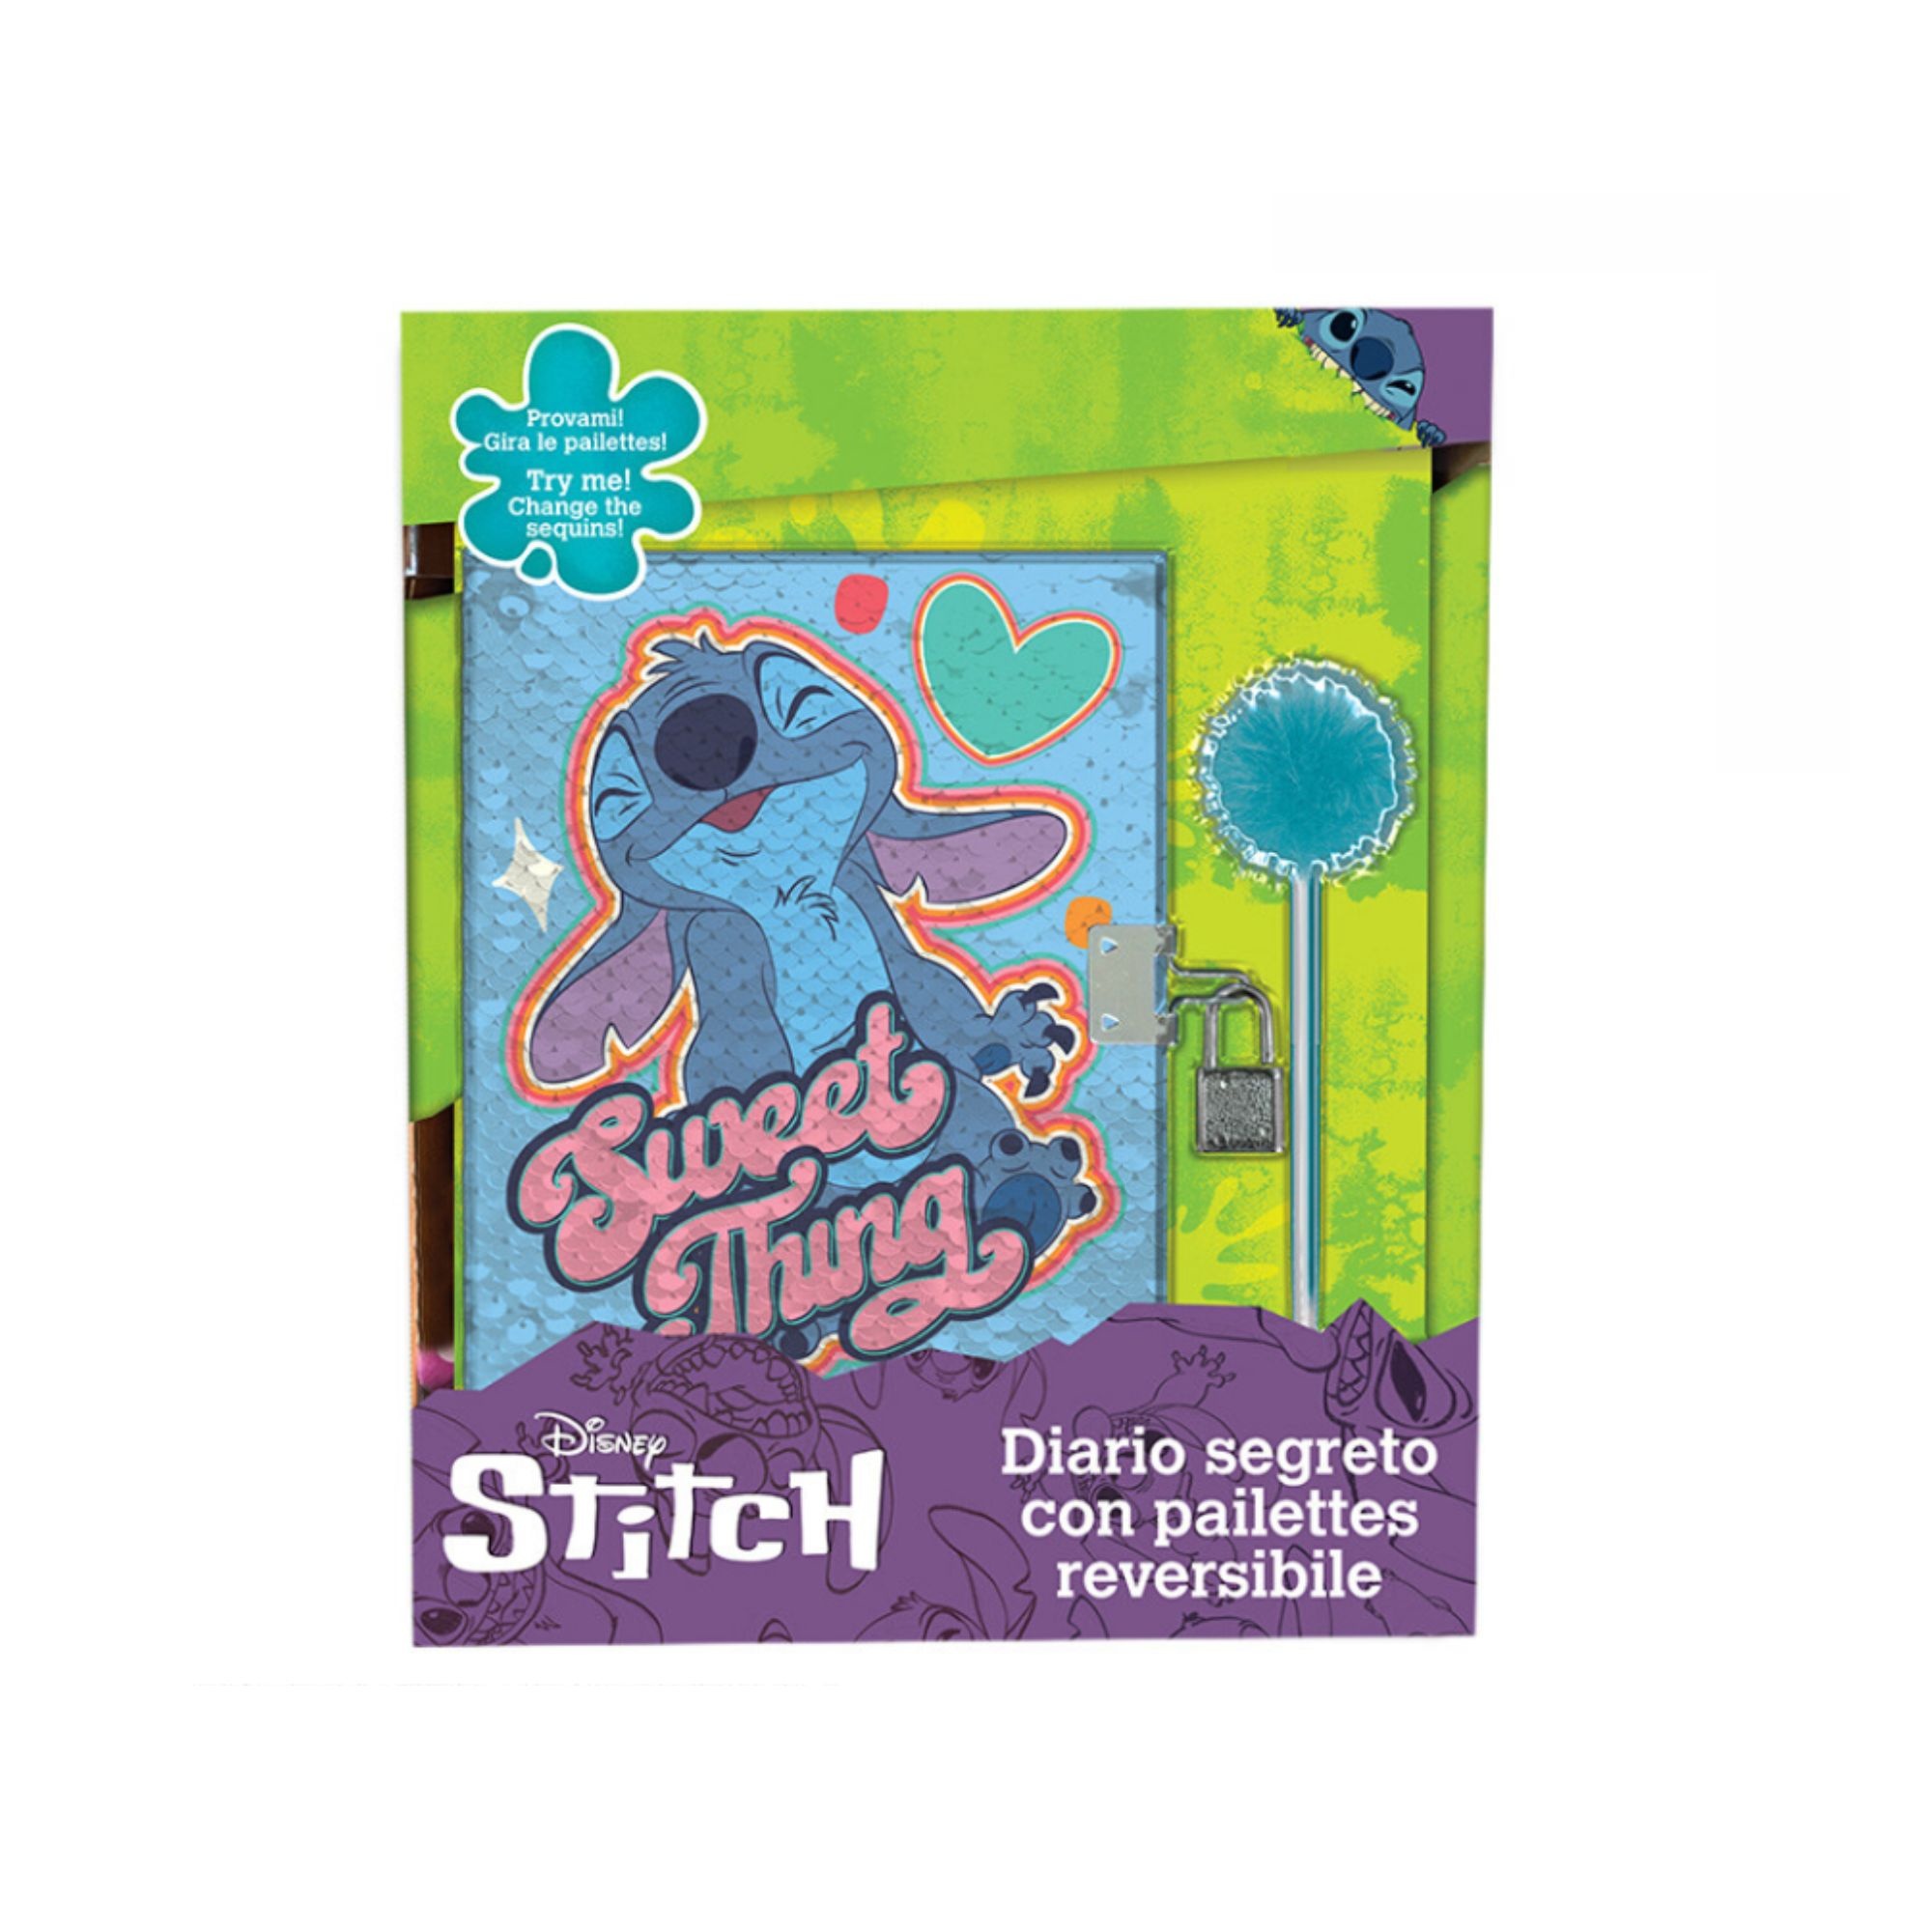 Diario segreto di stitch con pailettese reversibili e lucchetto - Disney Stitch